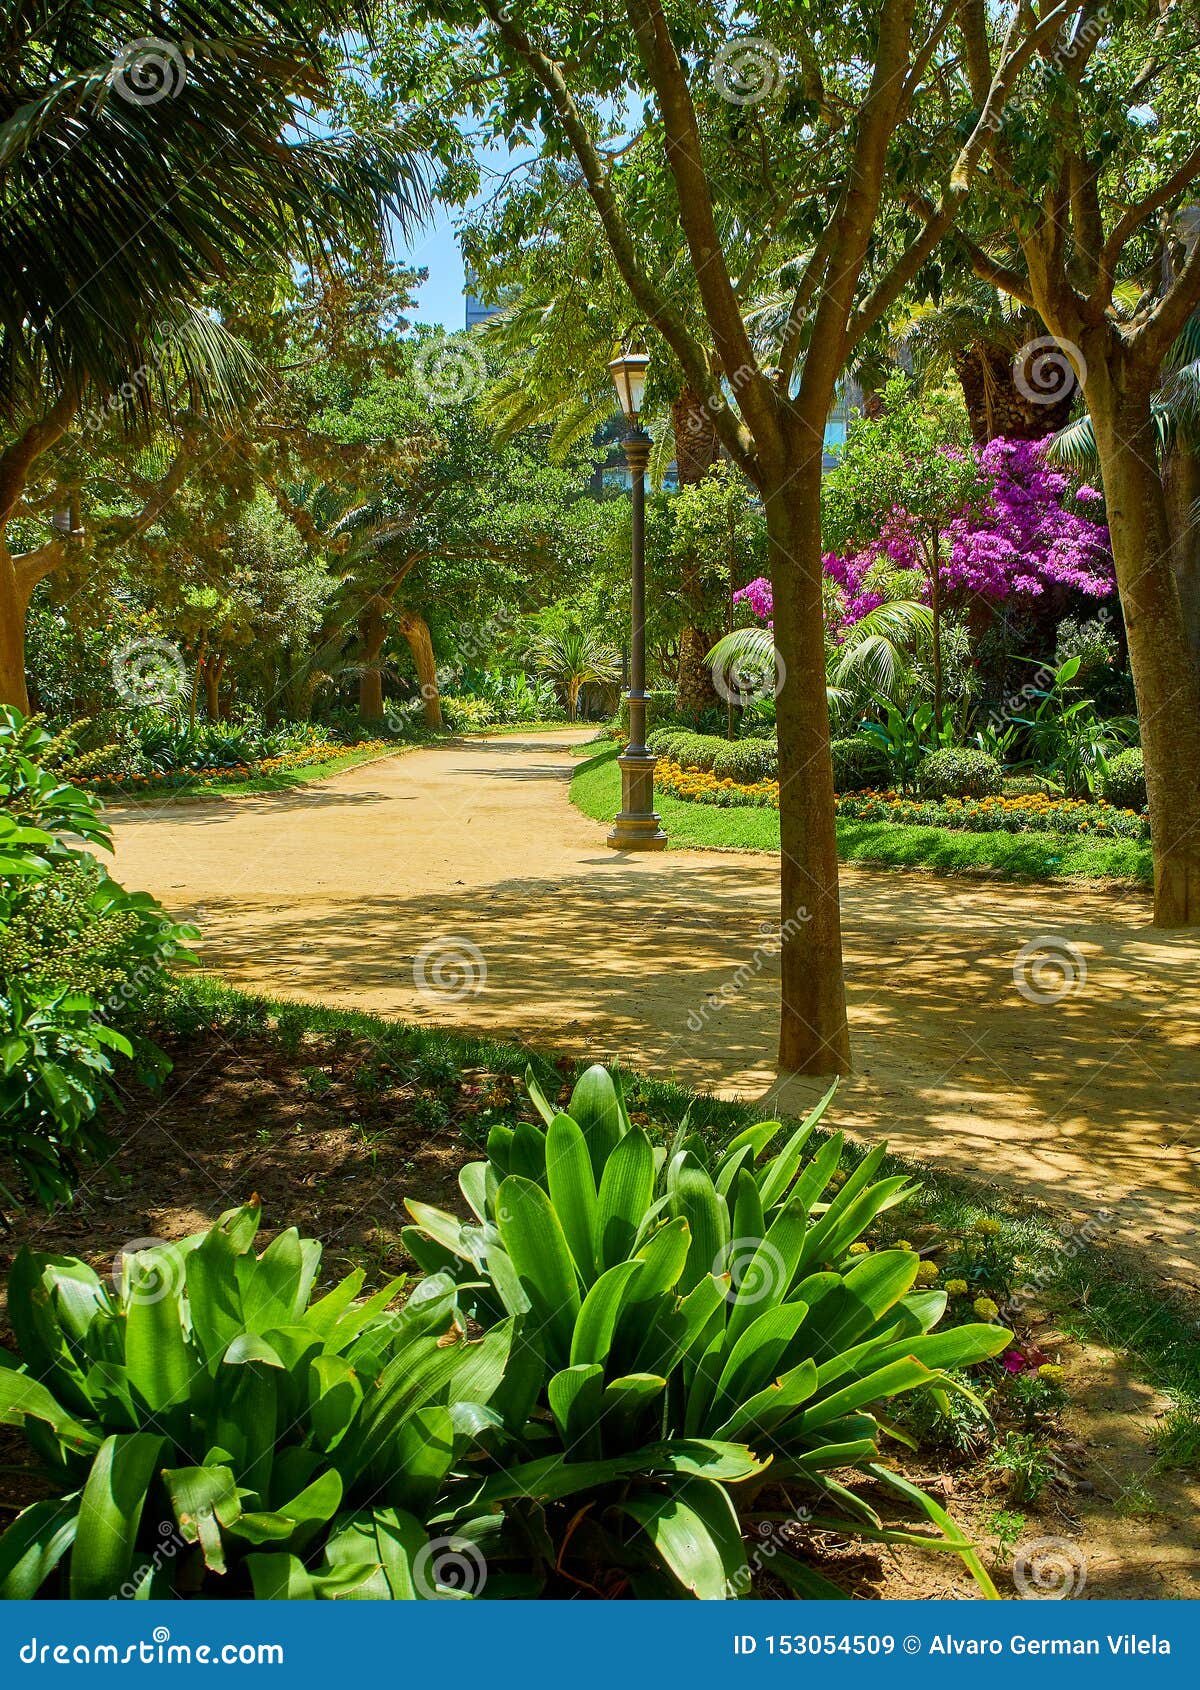 genoves park, botanical garden of cadiz, spain